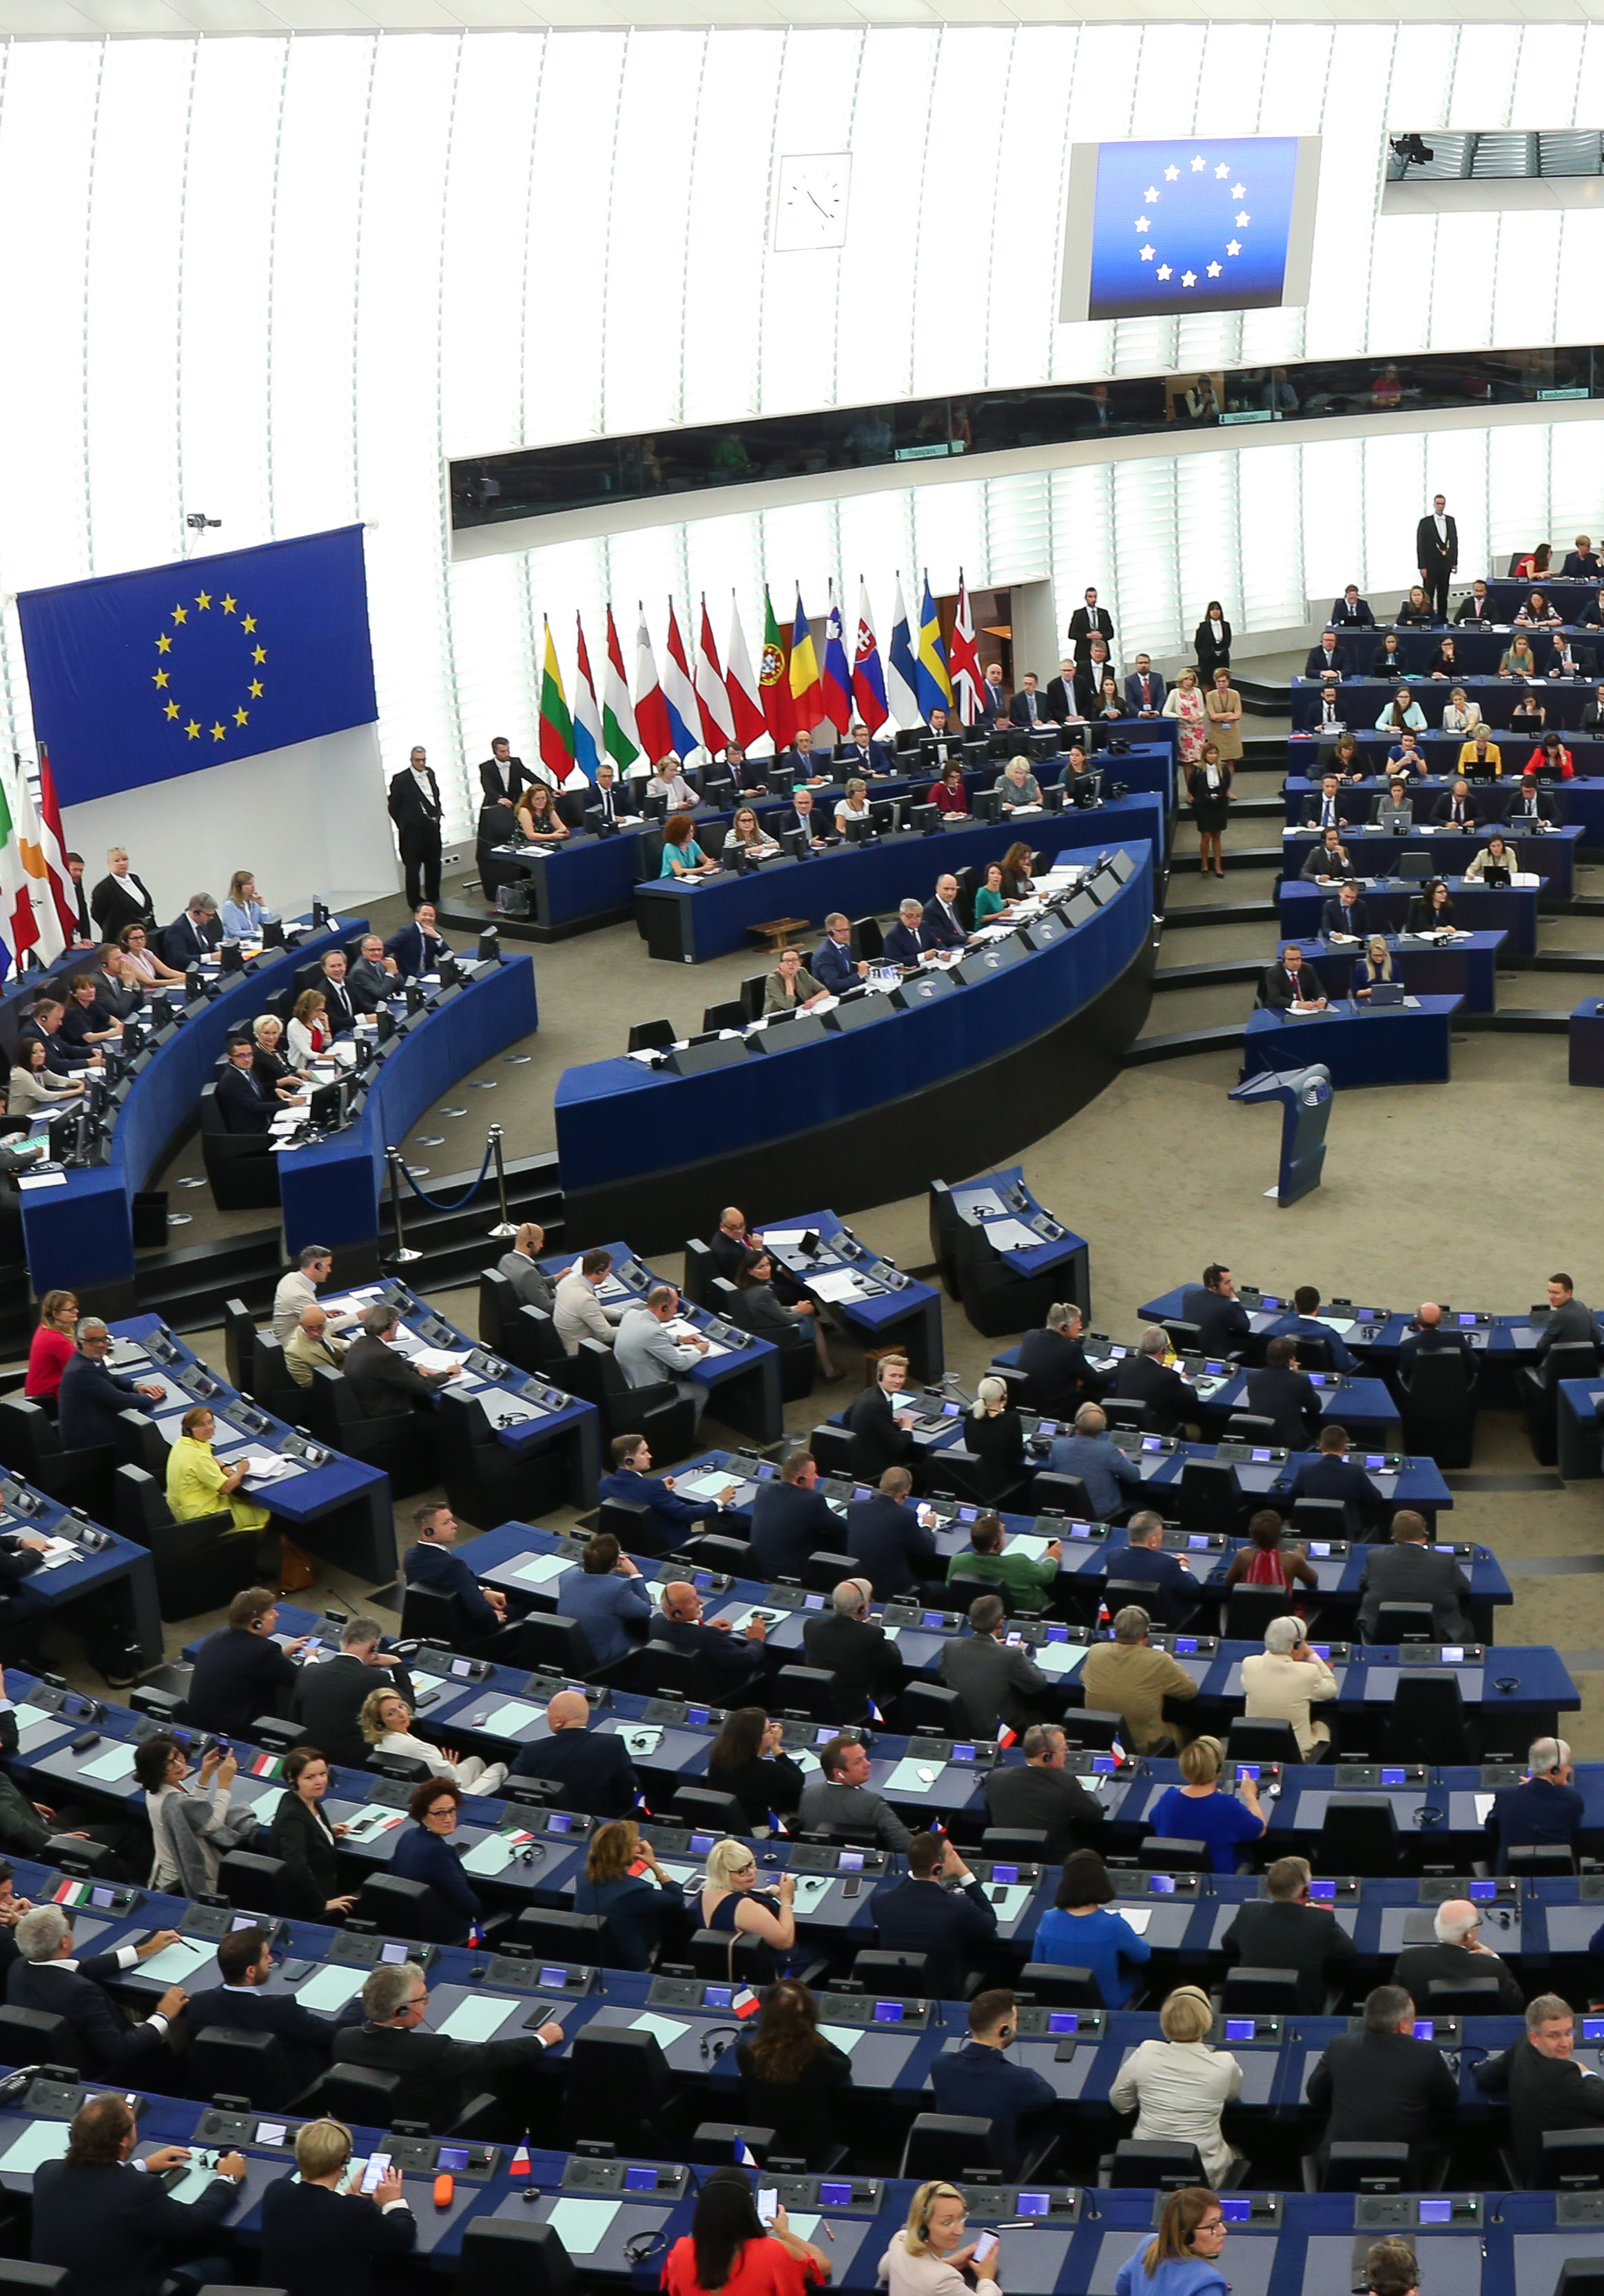 当日,新一届欧洲议会第一次全体会议在